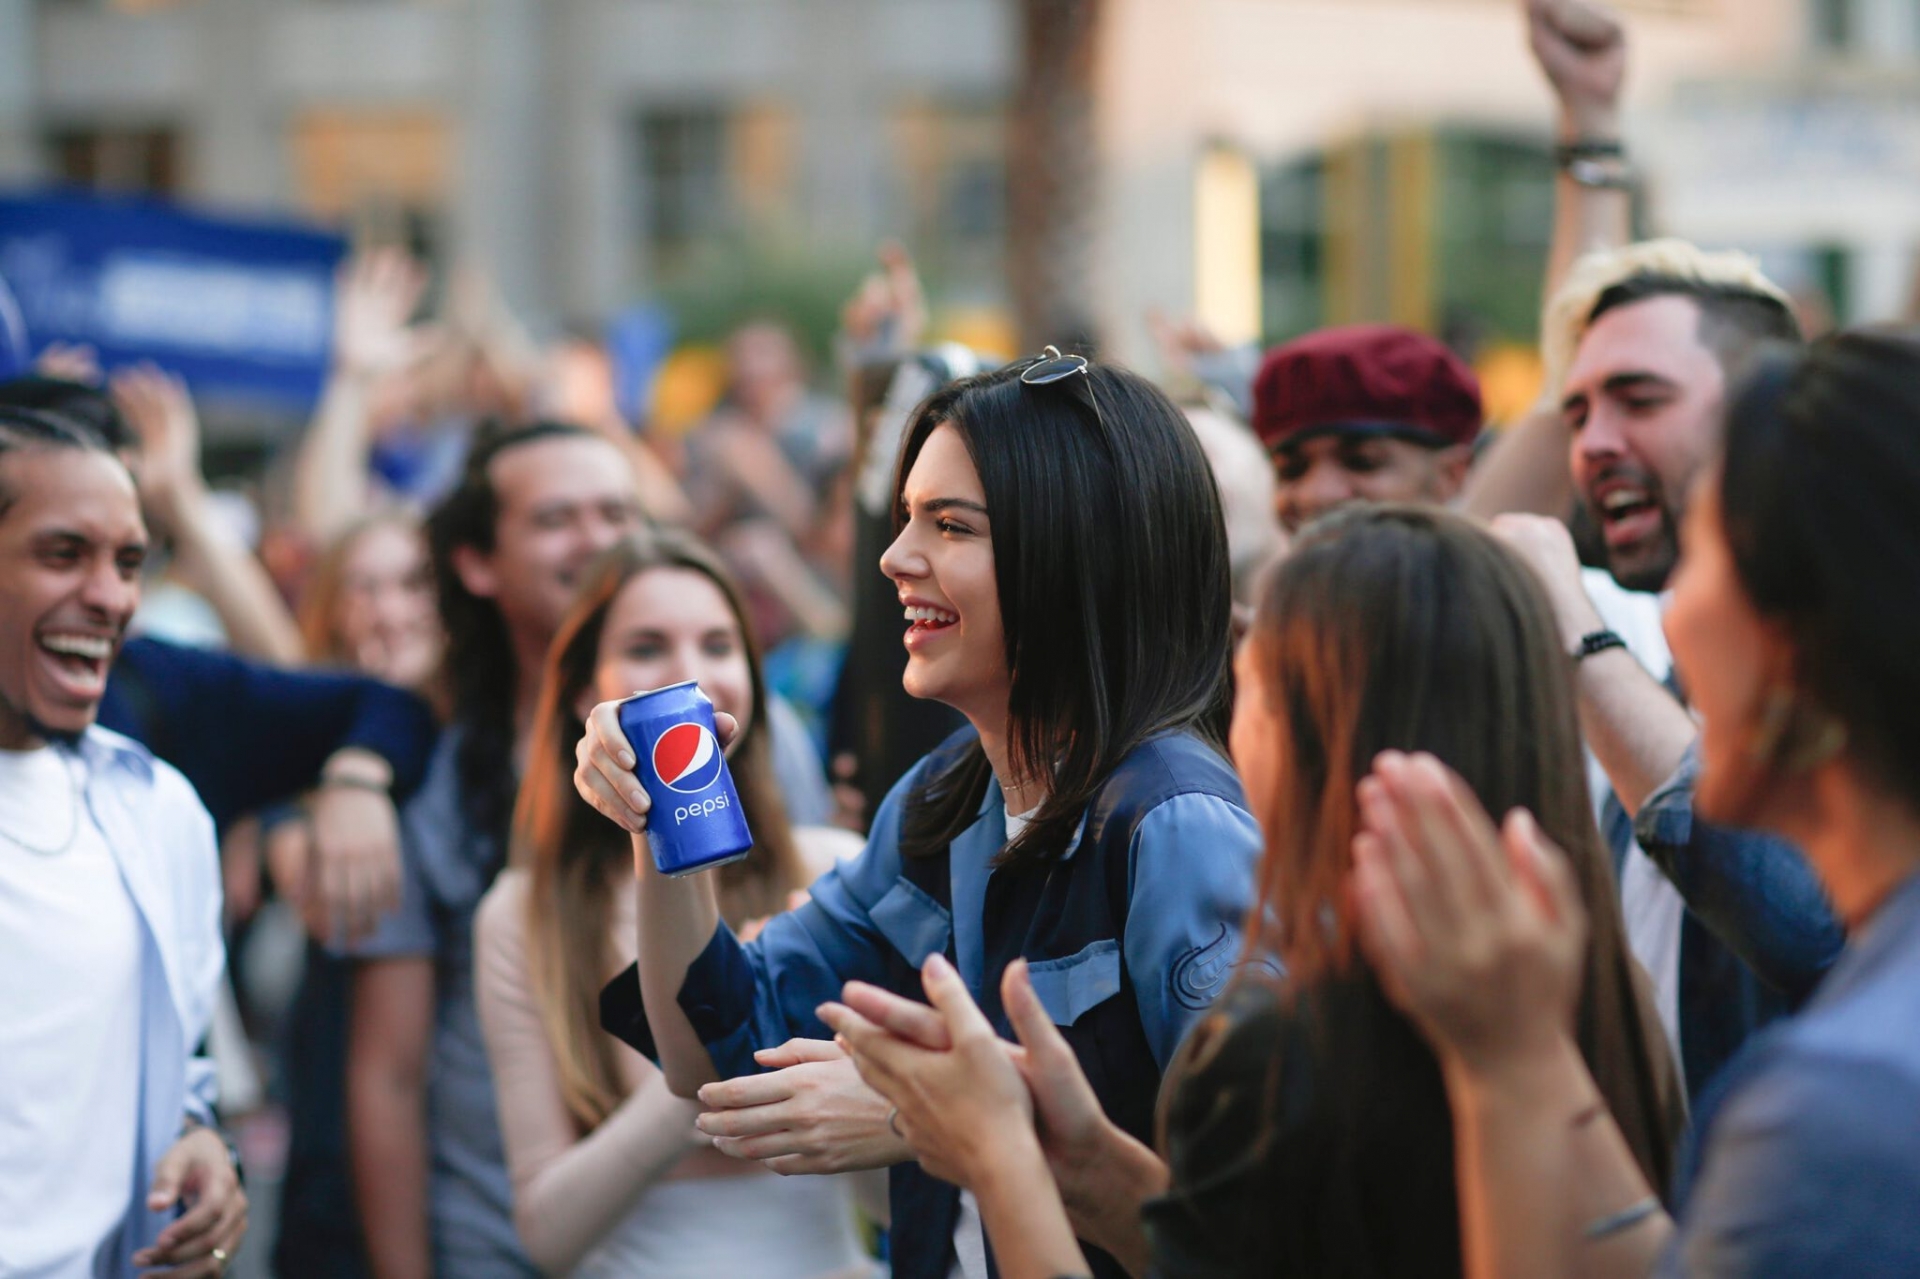 Kendall Jenner bị chỉ trích vì quá lố trong quảng cáo Pepsi